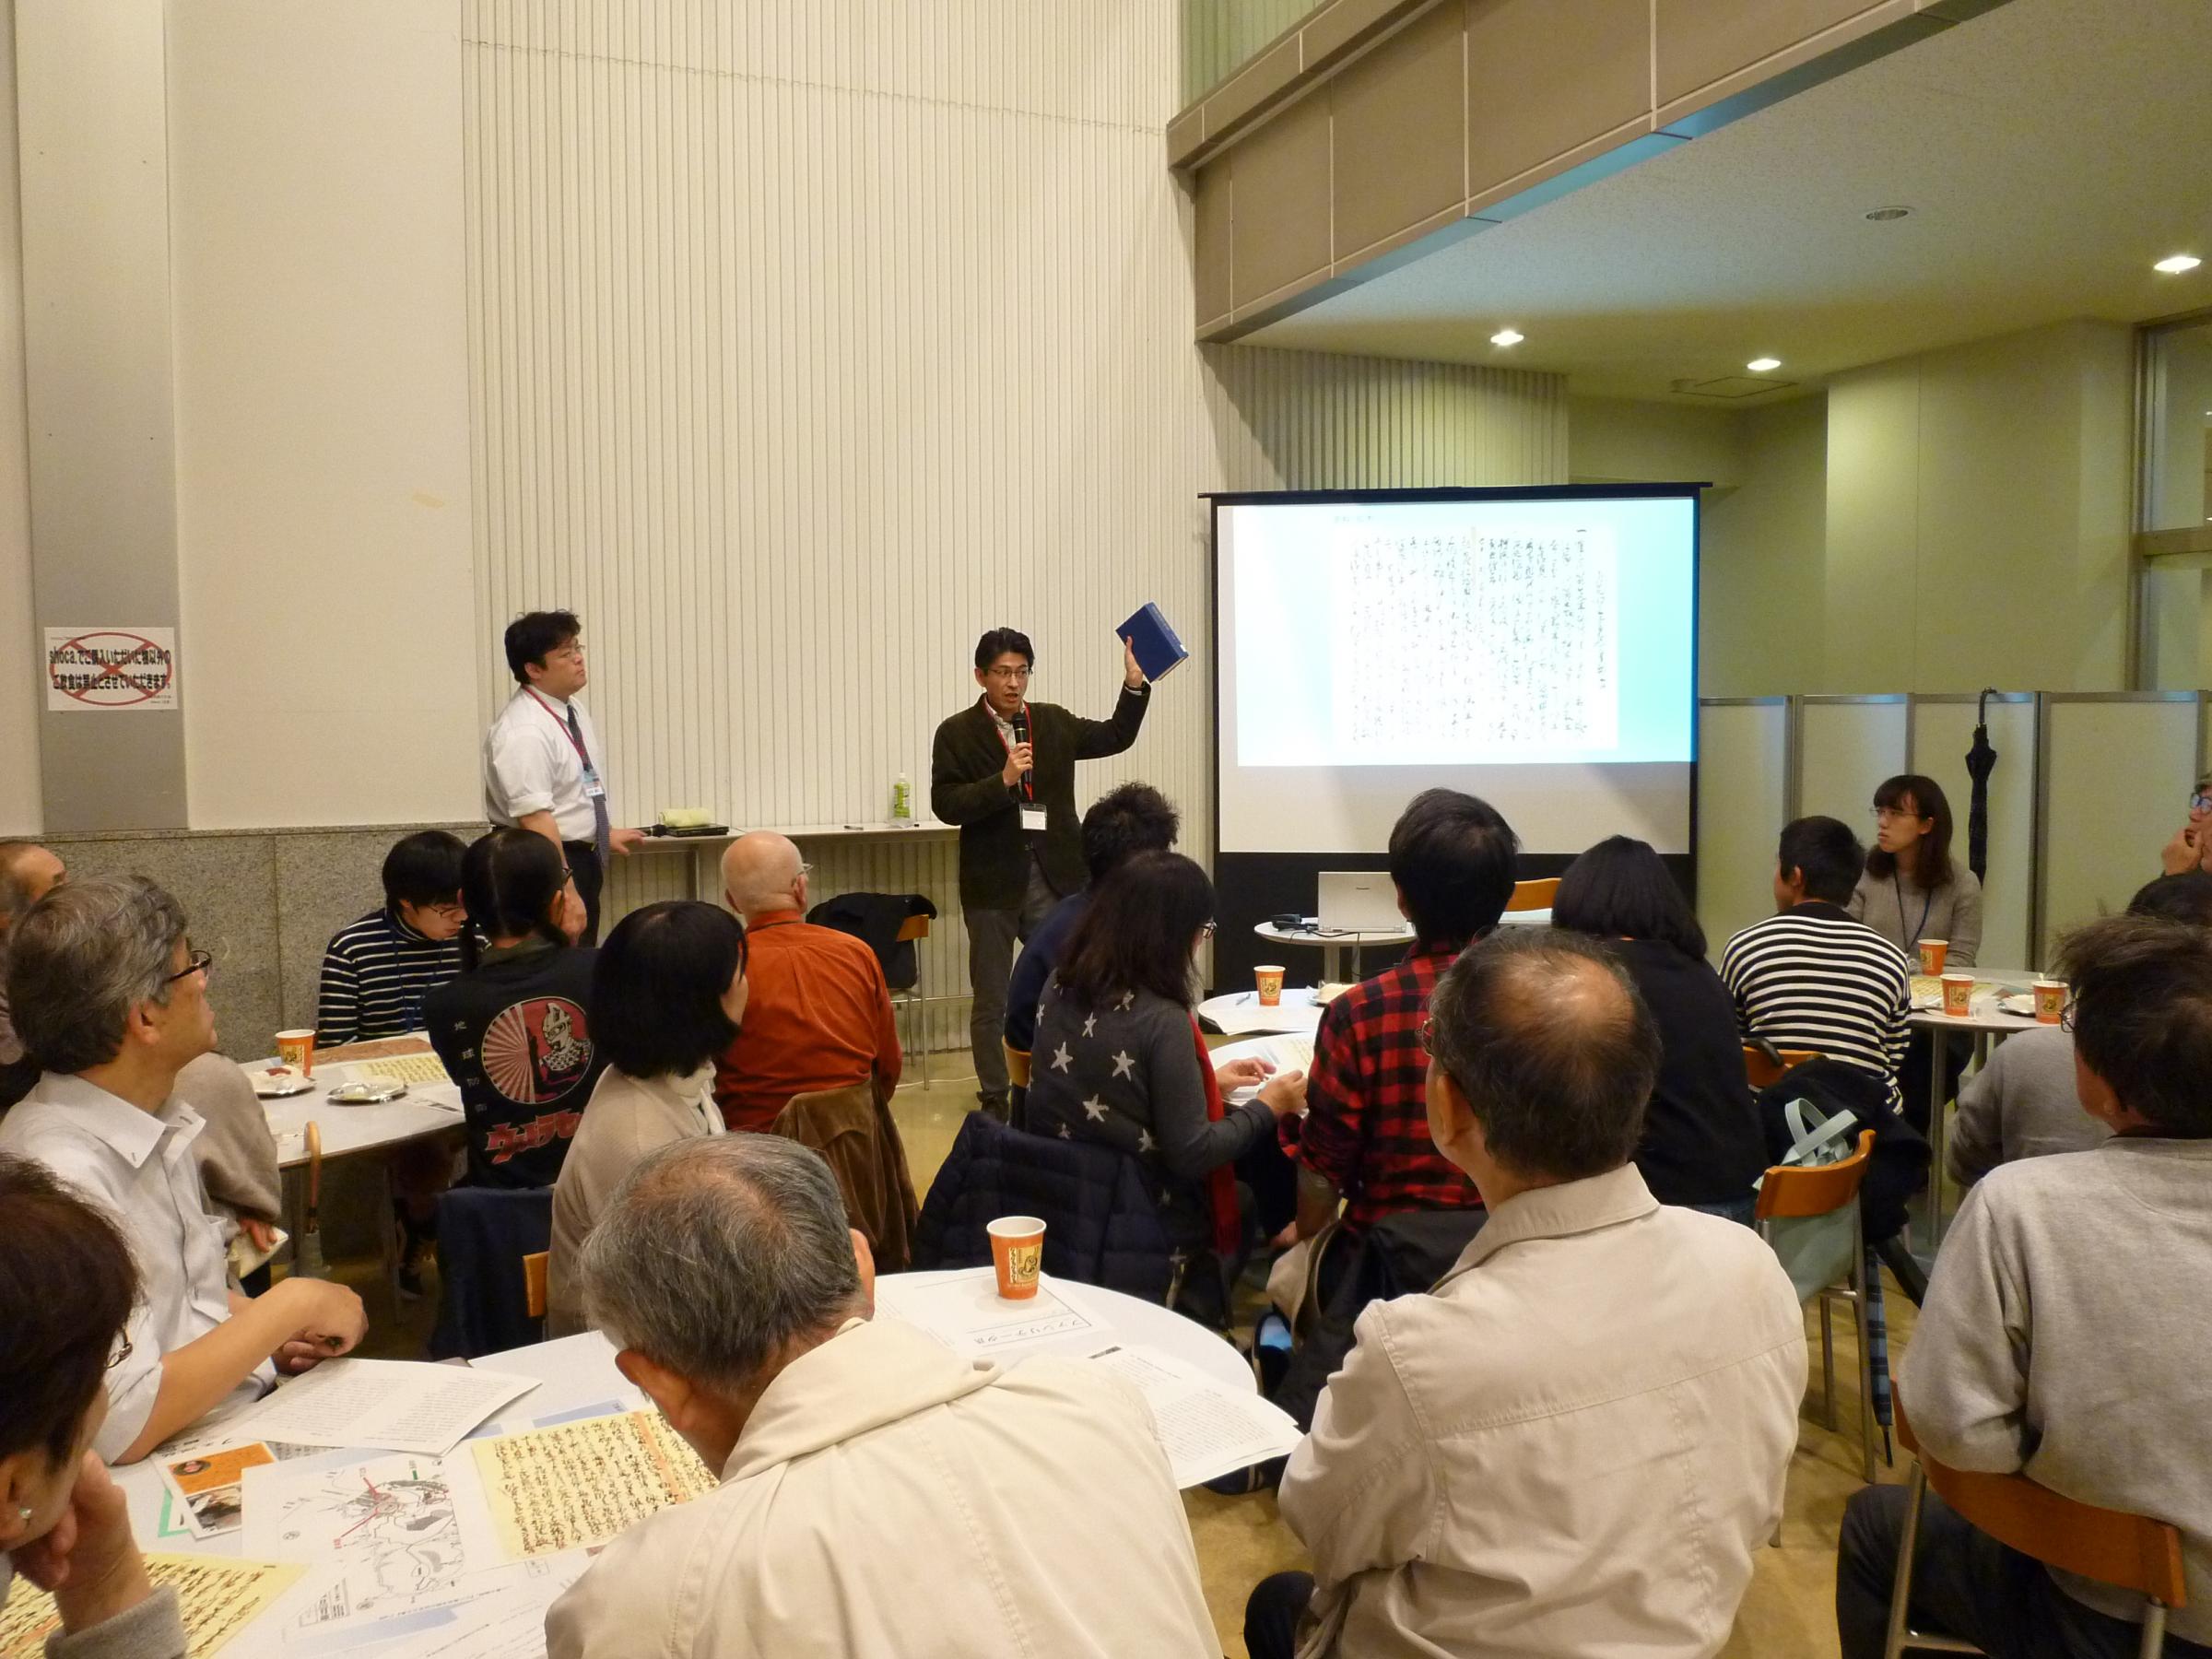 話題提供を行う教育学部多和田教授と熱心に聞き入る参加者